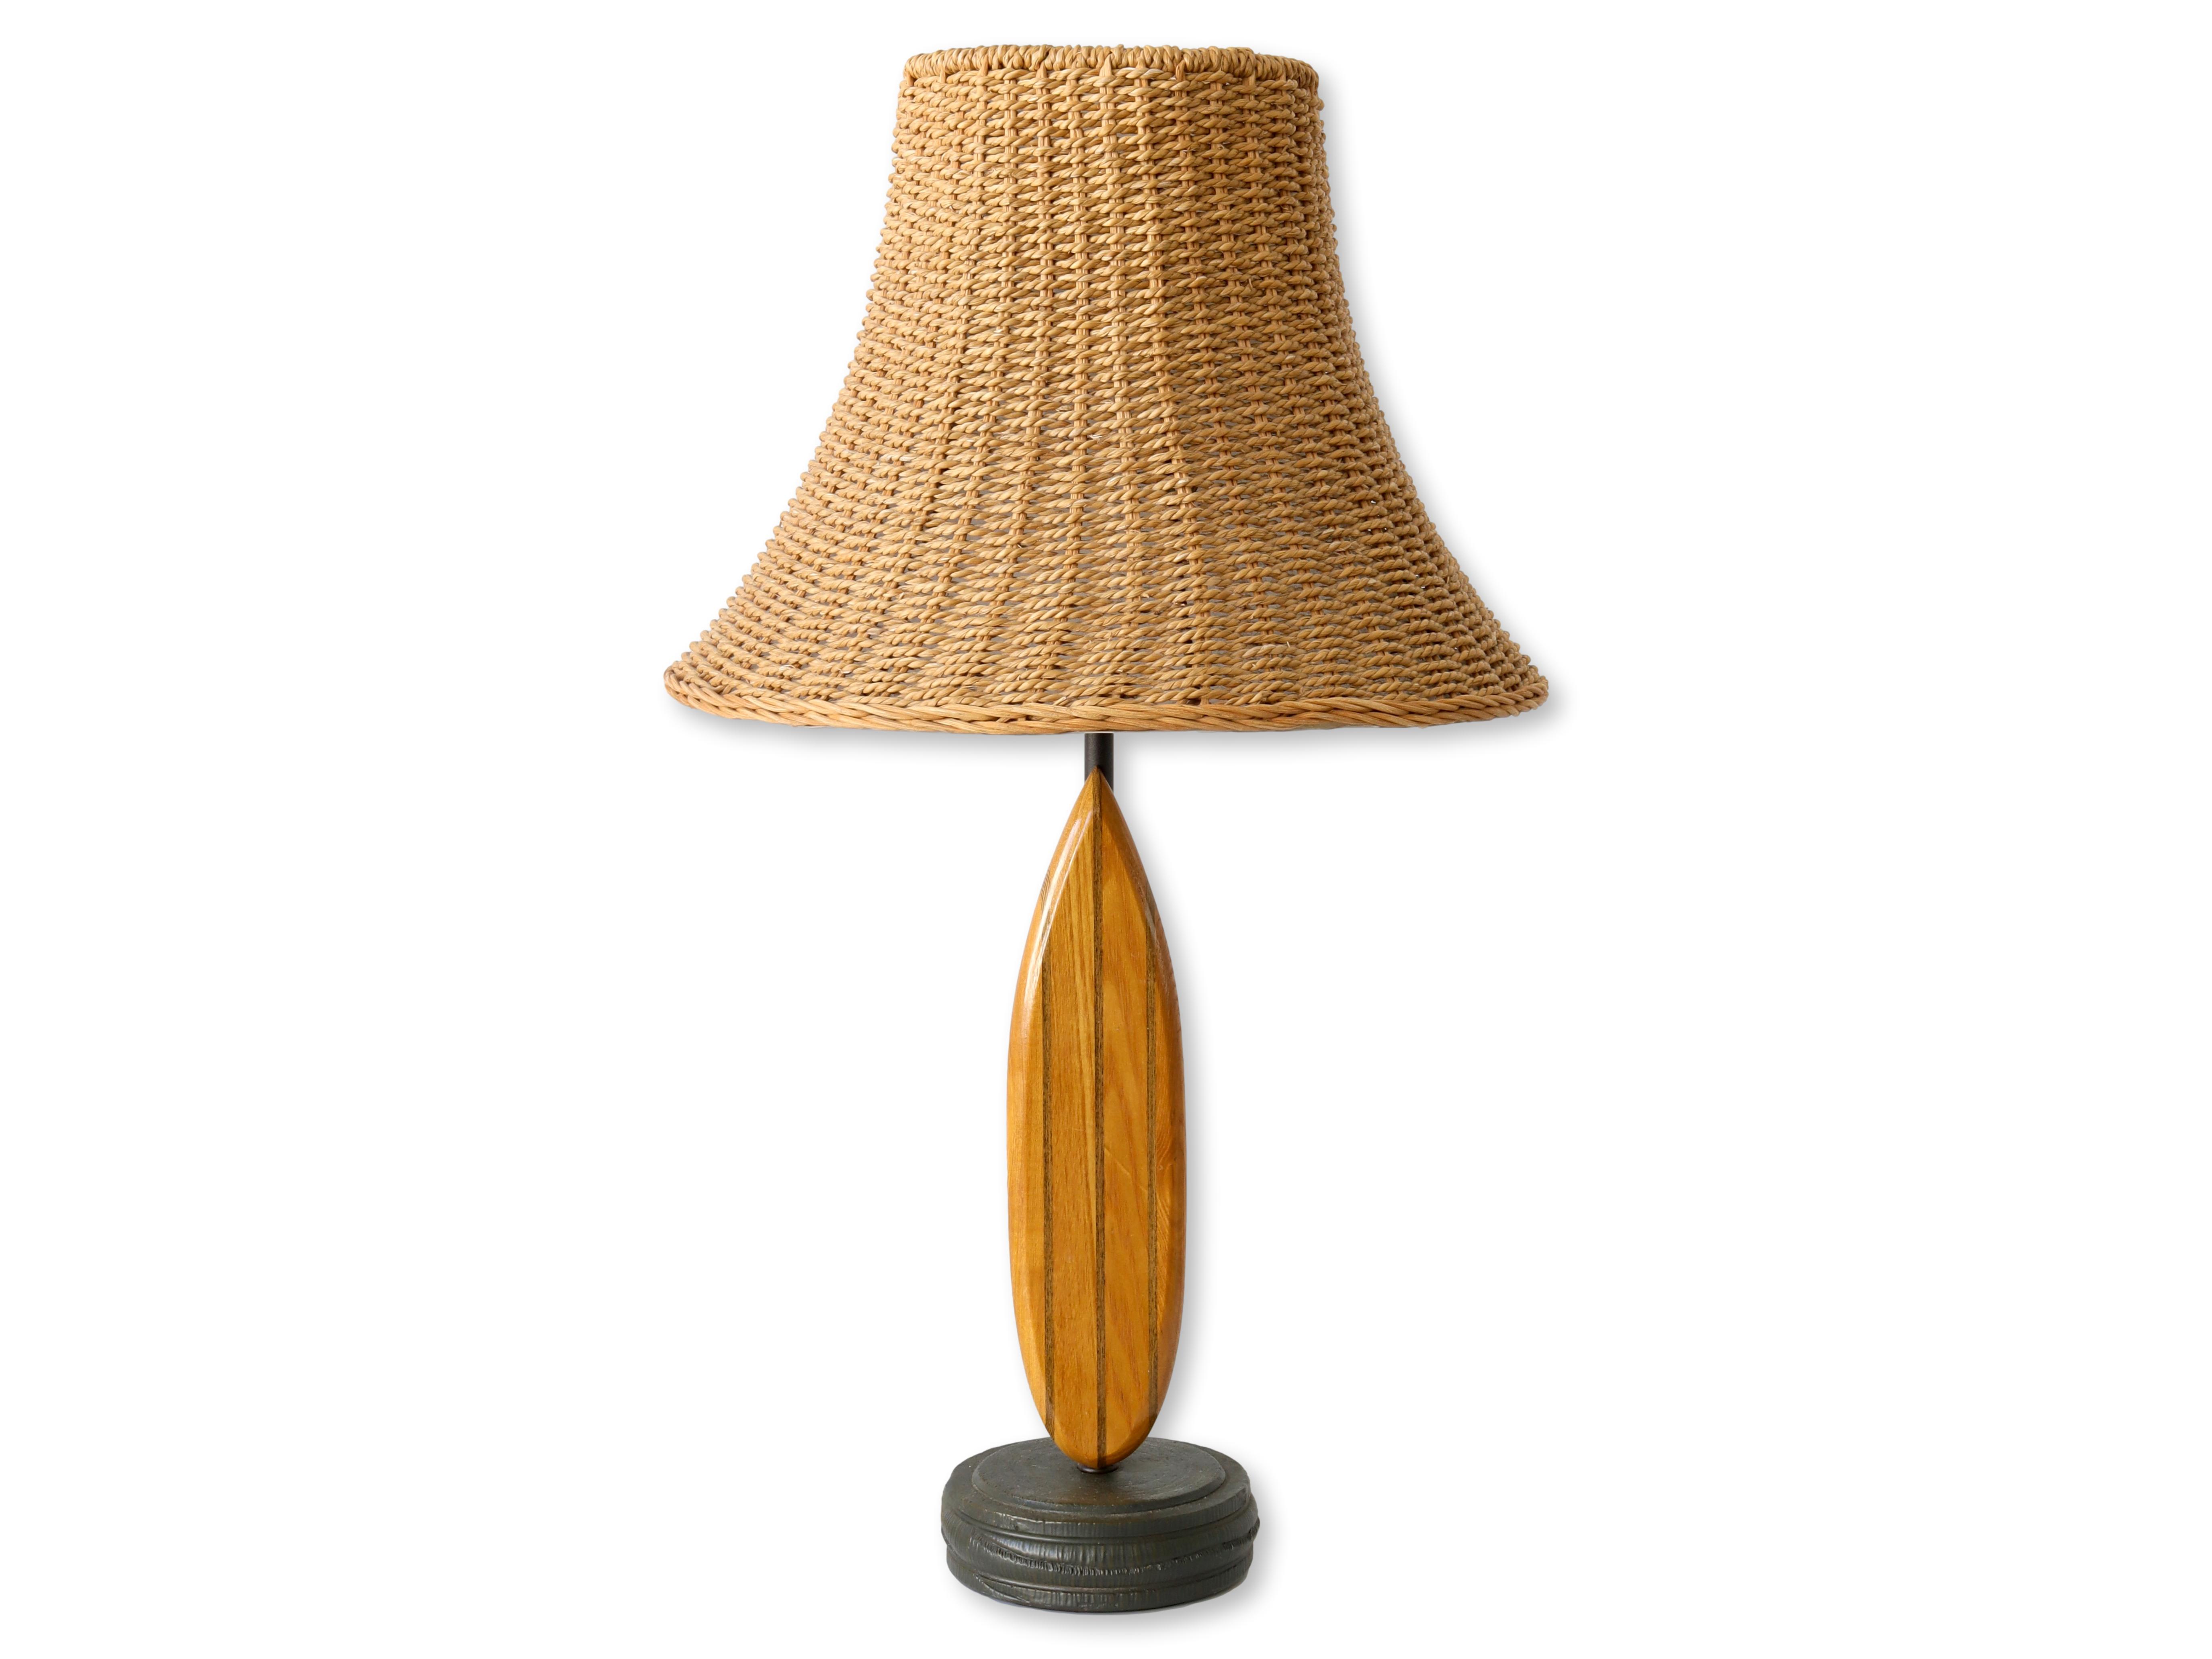 Vintage Surfboard Lamp w/ Wicker Shade